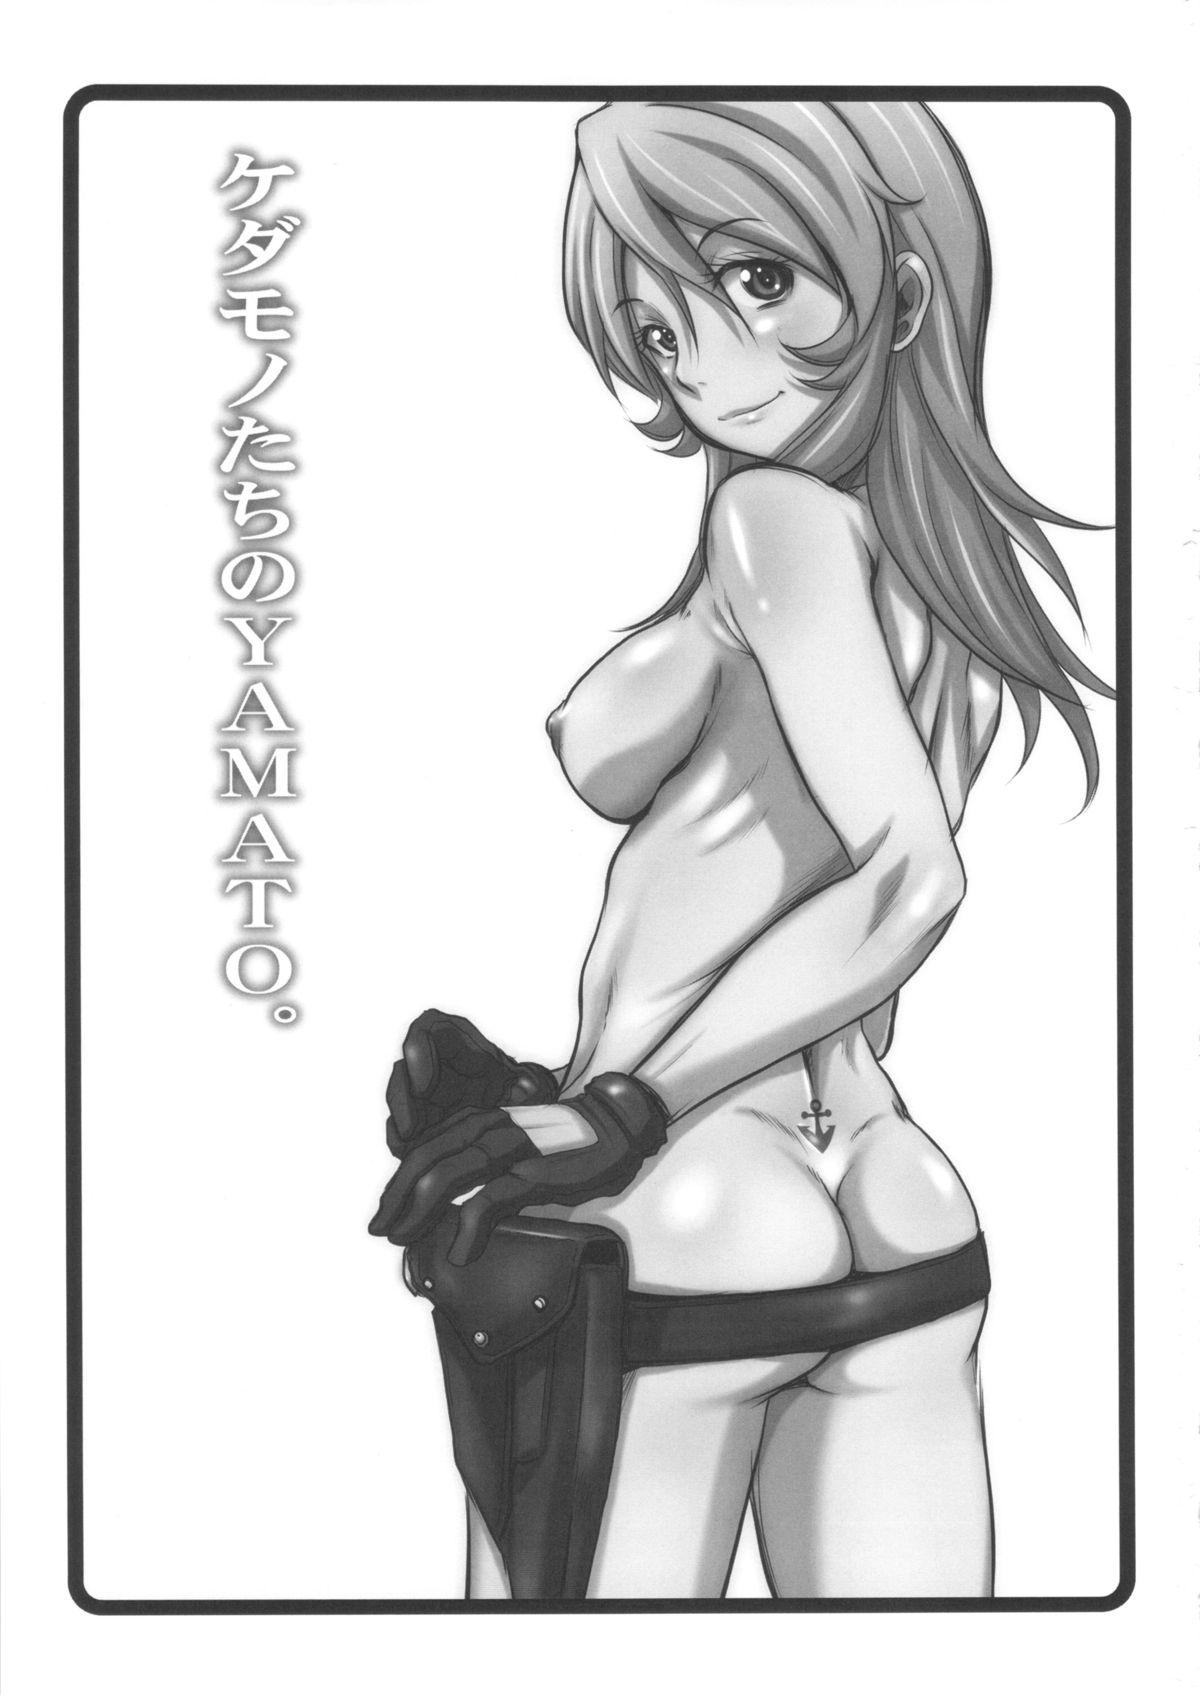 Women Fucking Kedamono-tachi no YAMATO. - Space battleship yamato Free Blow Job - Page 2